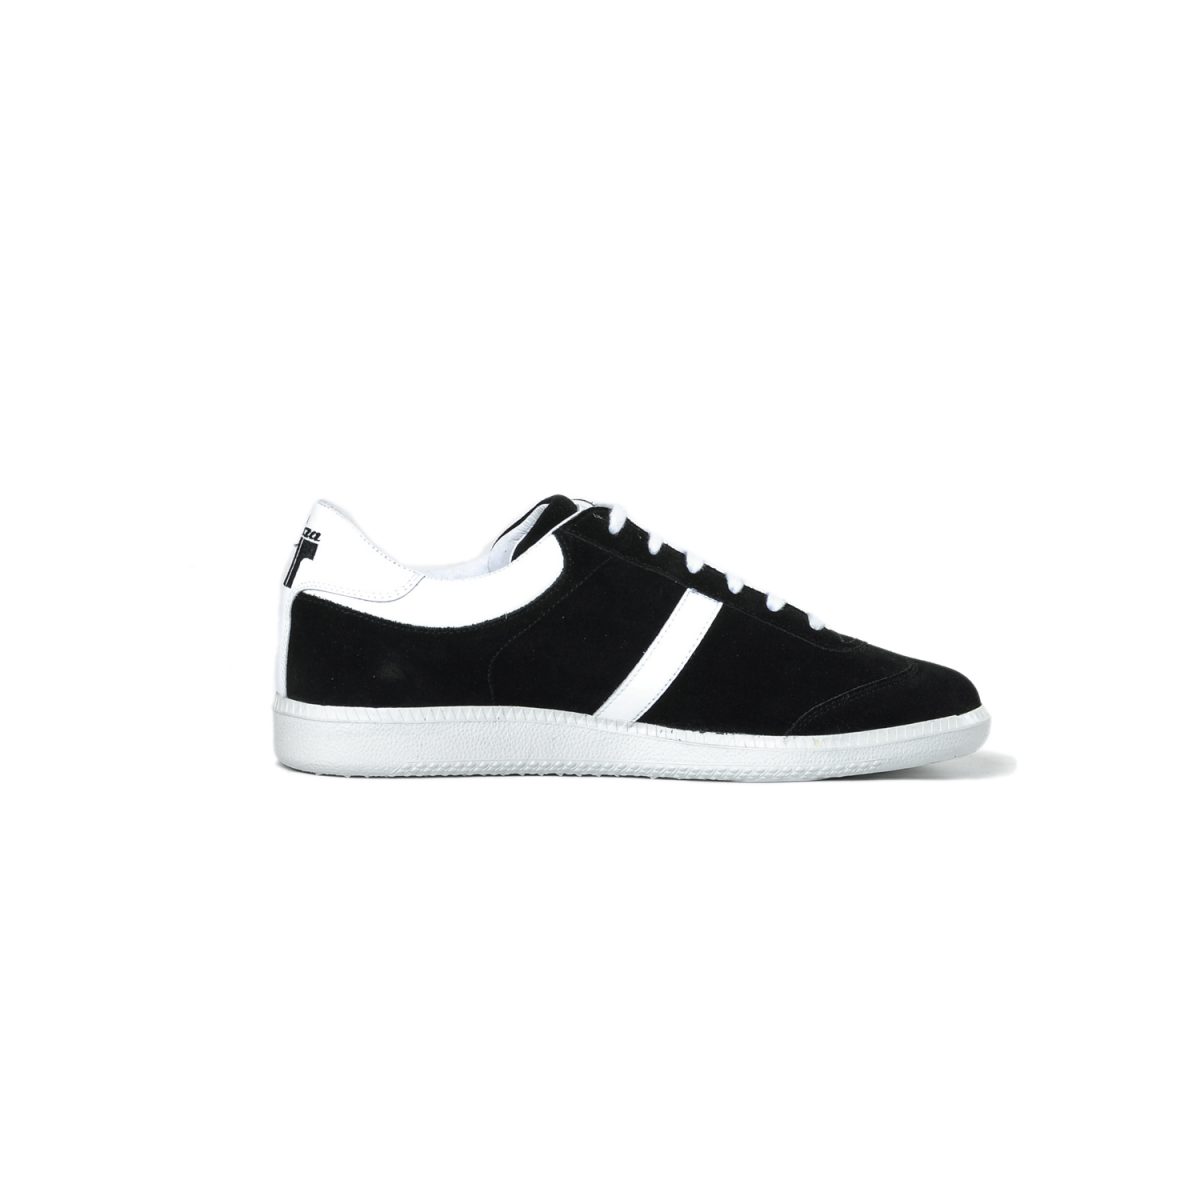 Tisza shoes - Compakt - Black-white